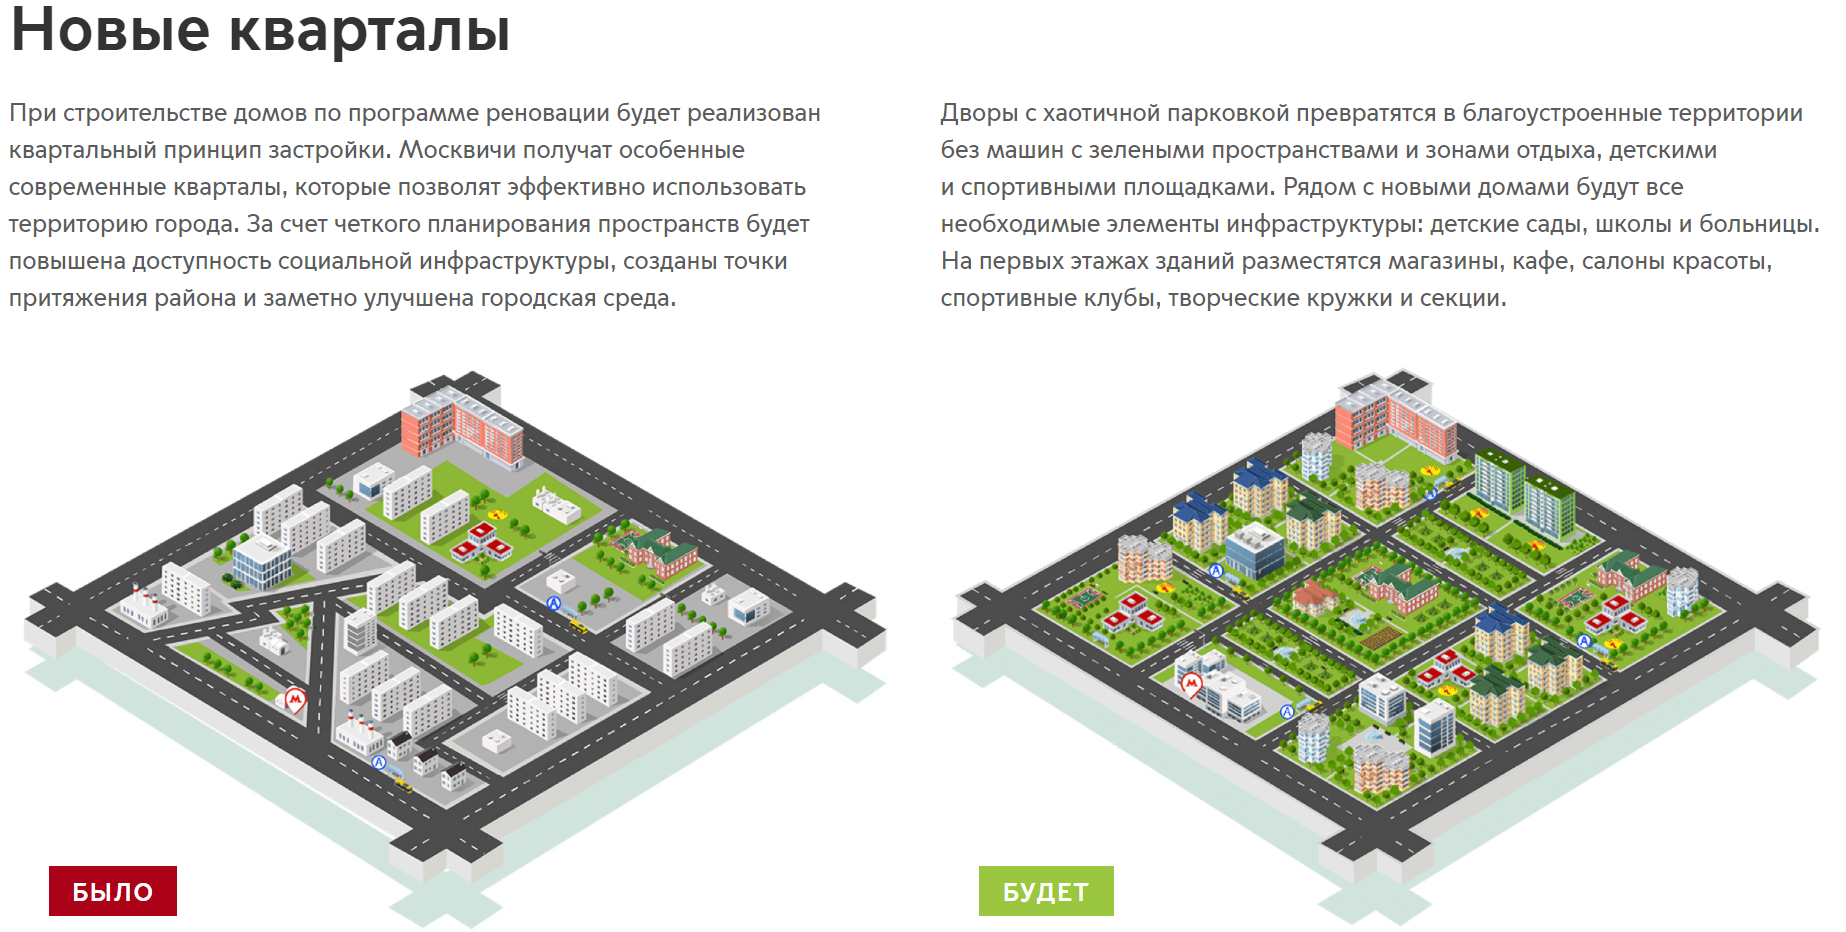 mos.ru/city/projects/renovation/novye-kvartaly/